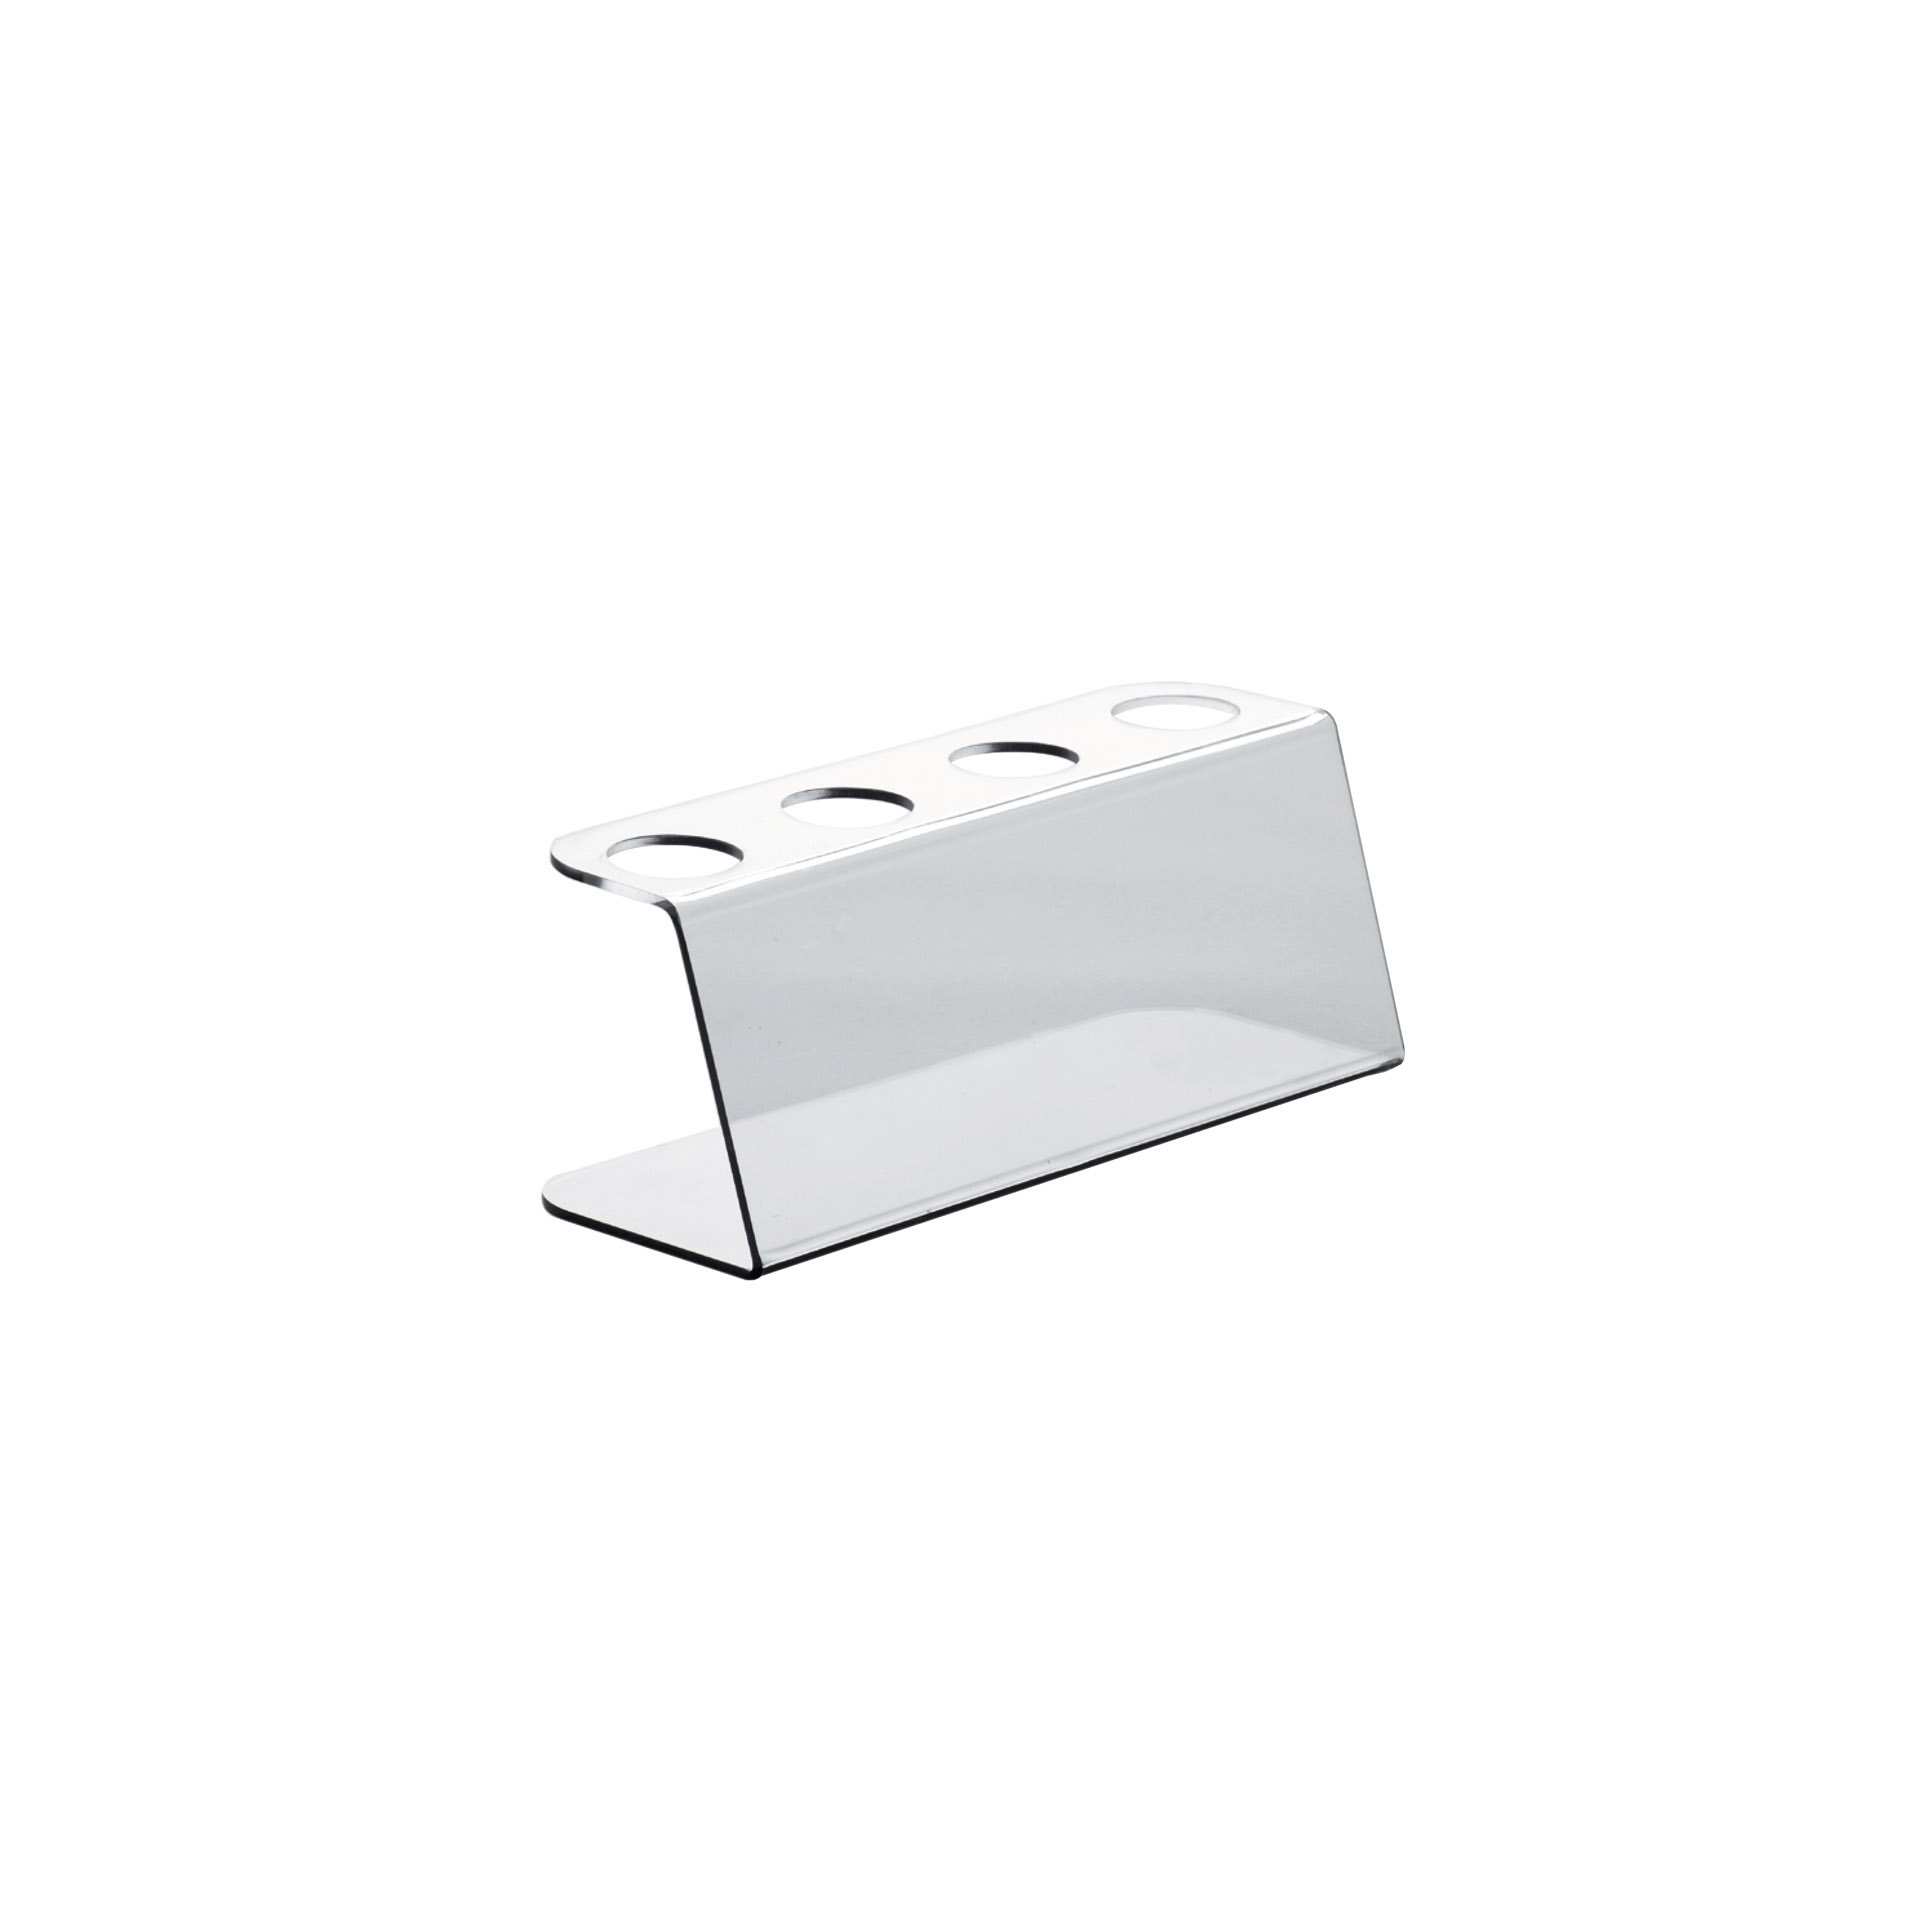 Eistütenhalter - für 4 Eistüten - Abm. 25,0 x 9,0 x 10,0 cm - PMMA - 172101-C